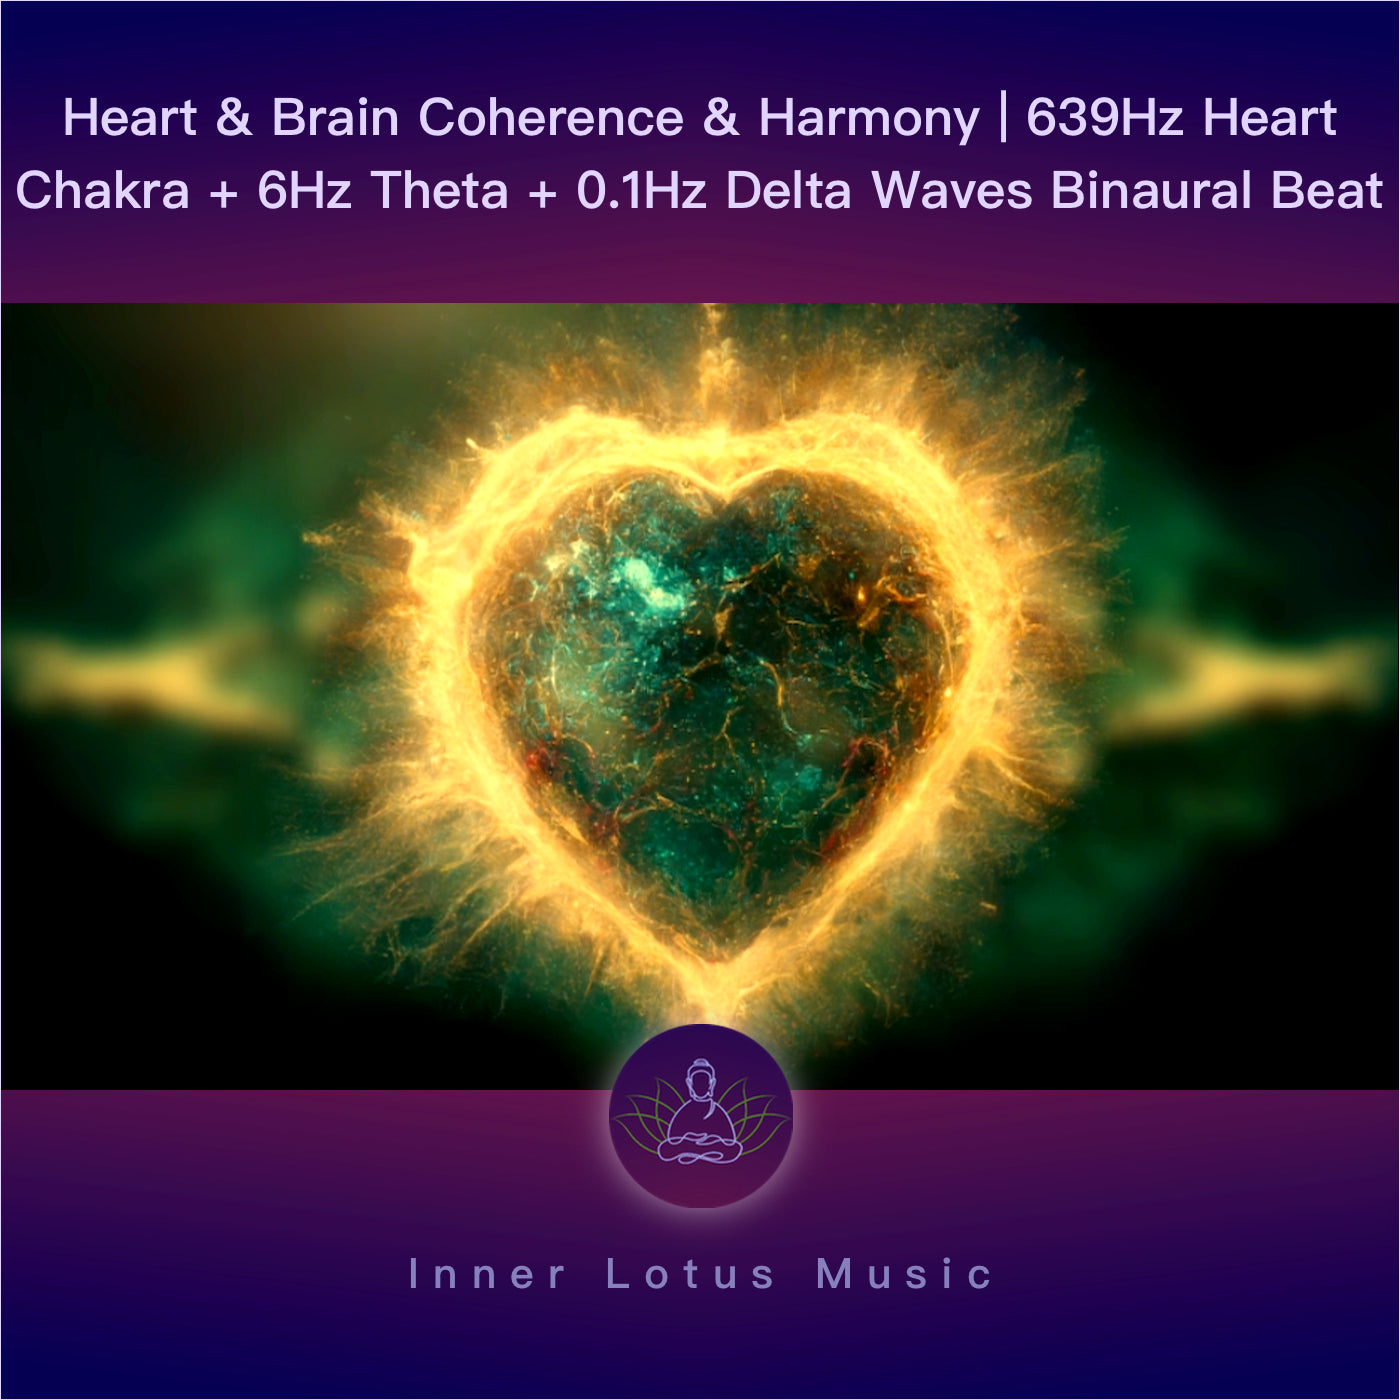 Heart & Brain Coherence & Harmony | 639Hz Heart Chakra + 6Hz Theta + 0.1Hz Delta Waves Binaural Beat